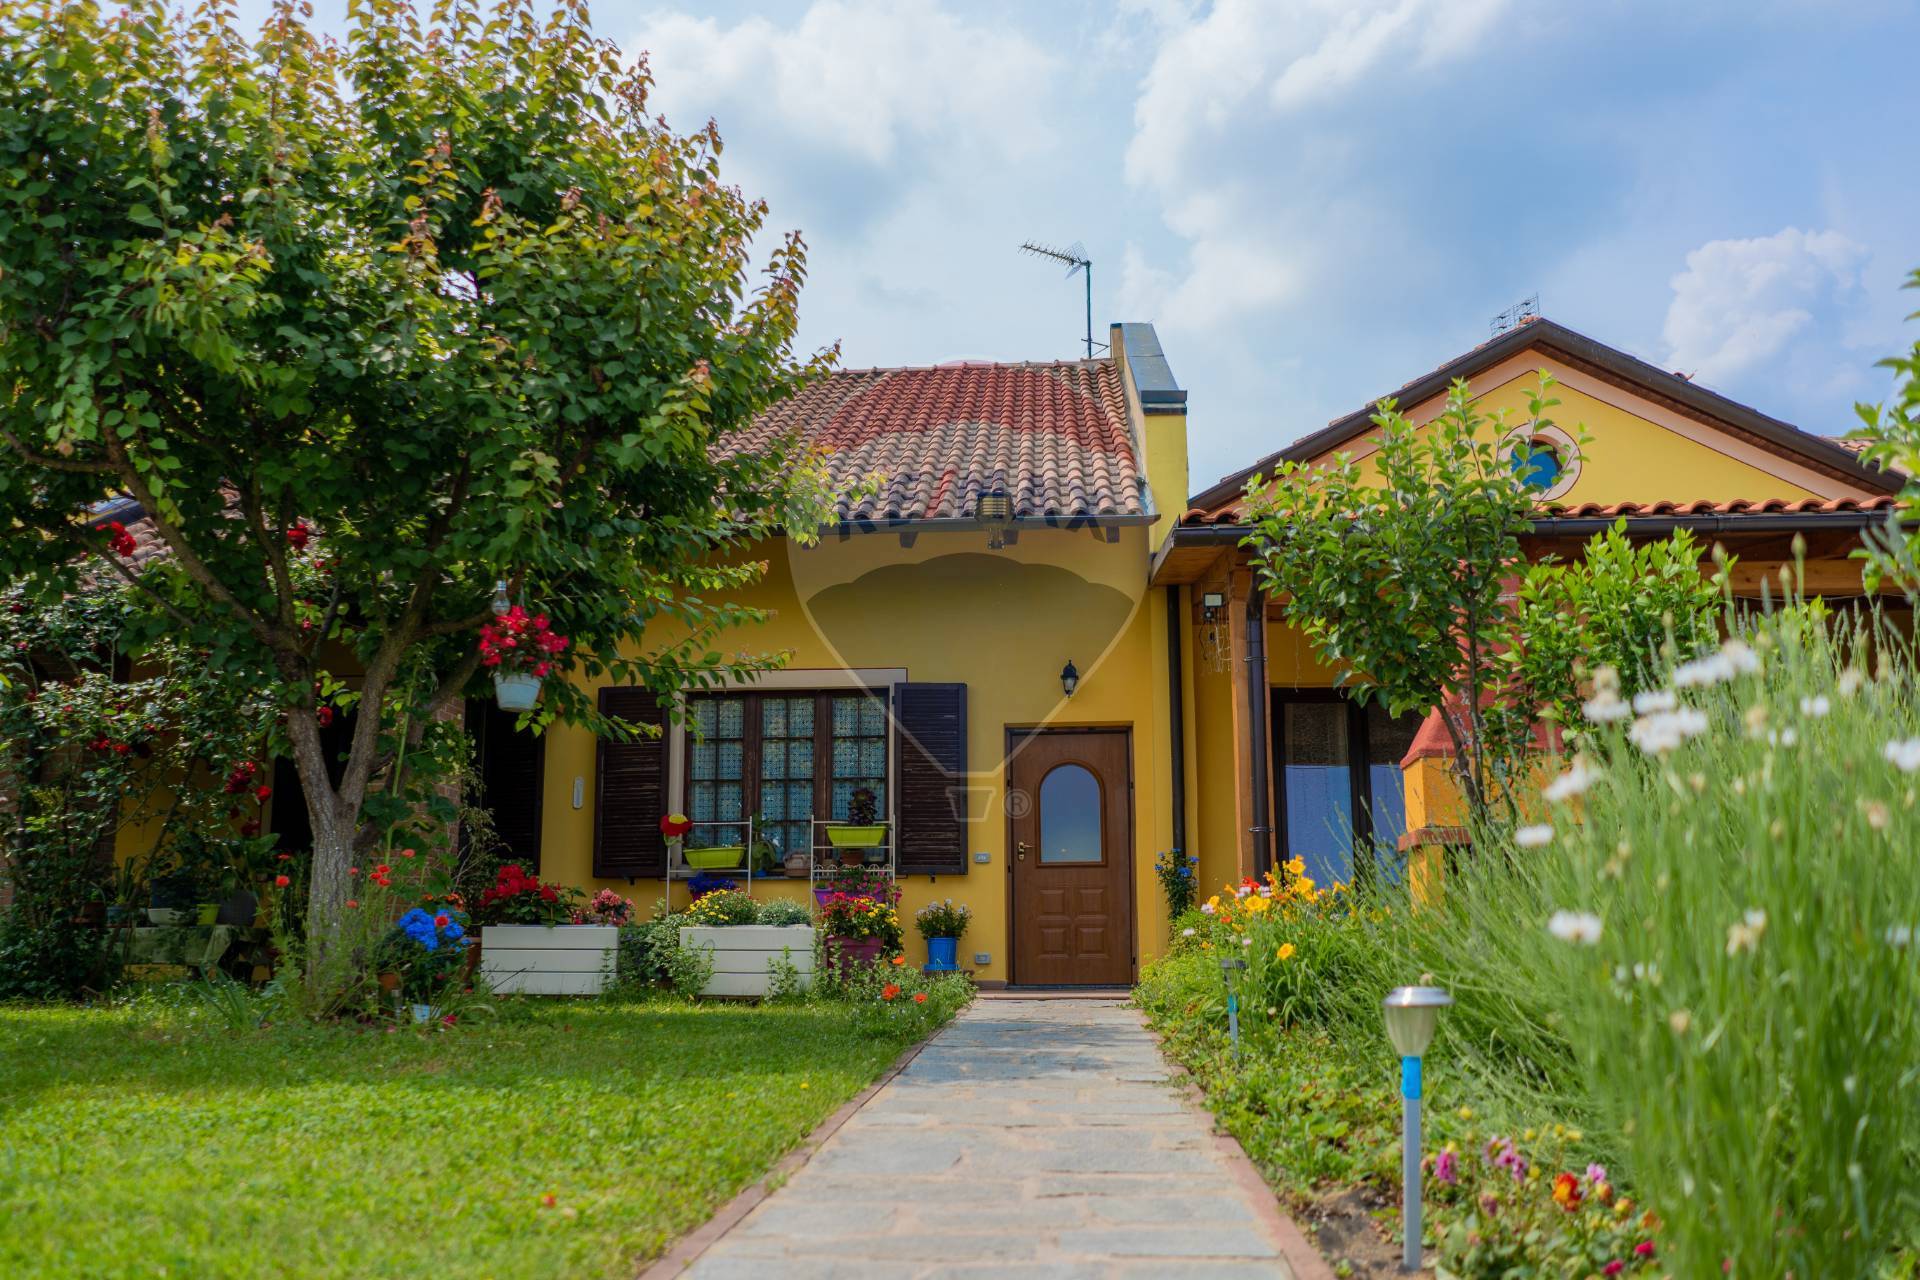 Villa Bifamiliare in vendita a Quargnento, 9 locali, prezzo € 340.000 | CambioCasa.it